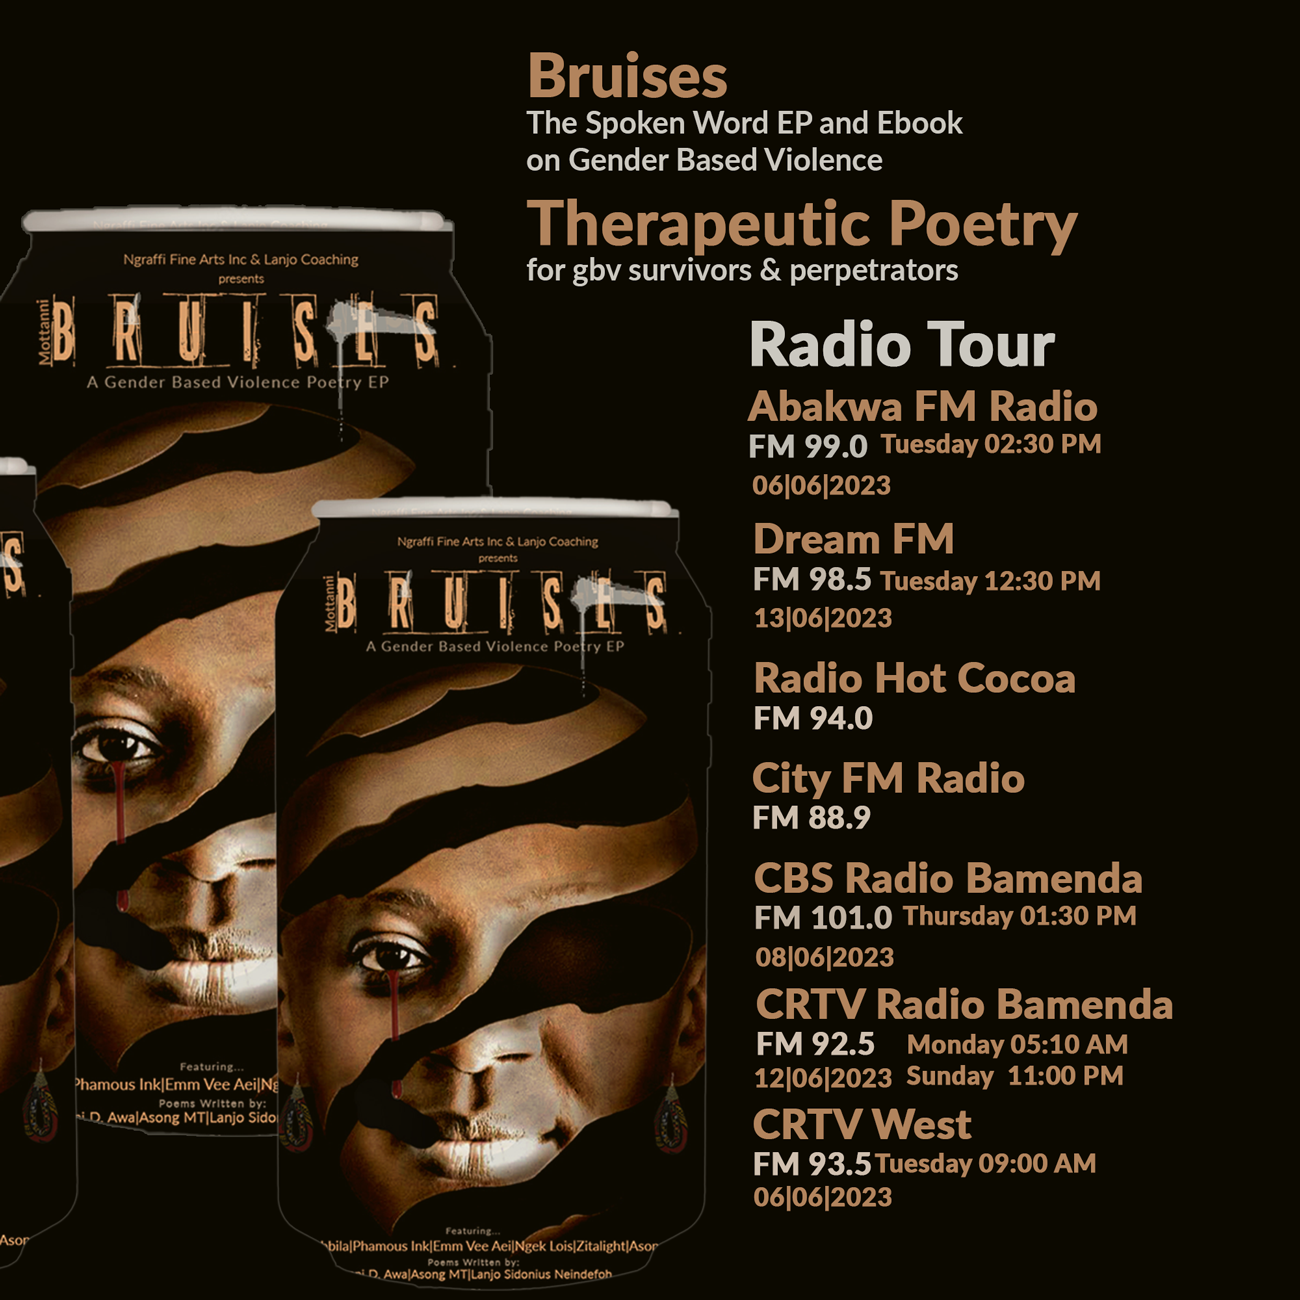 Bruises Radio Tour